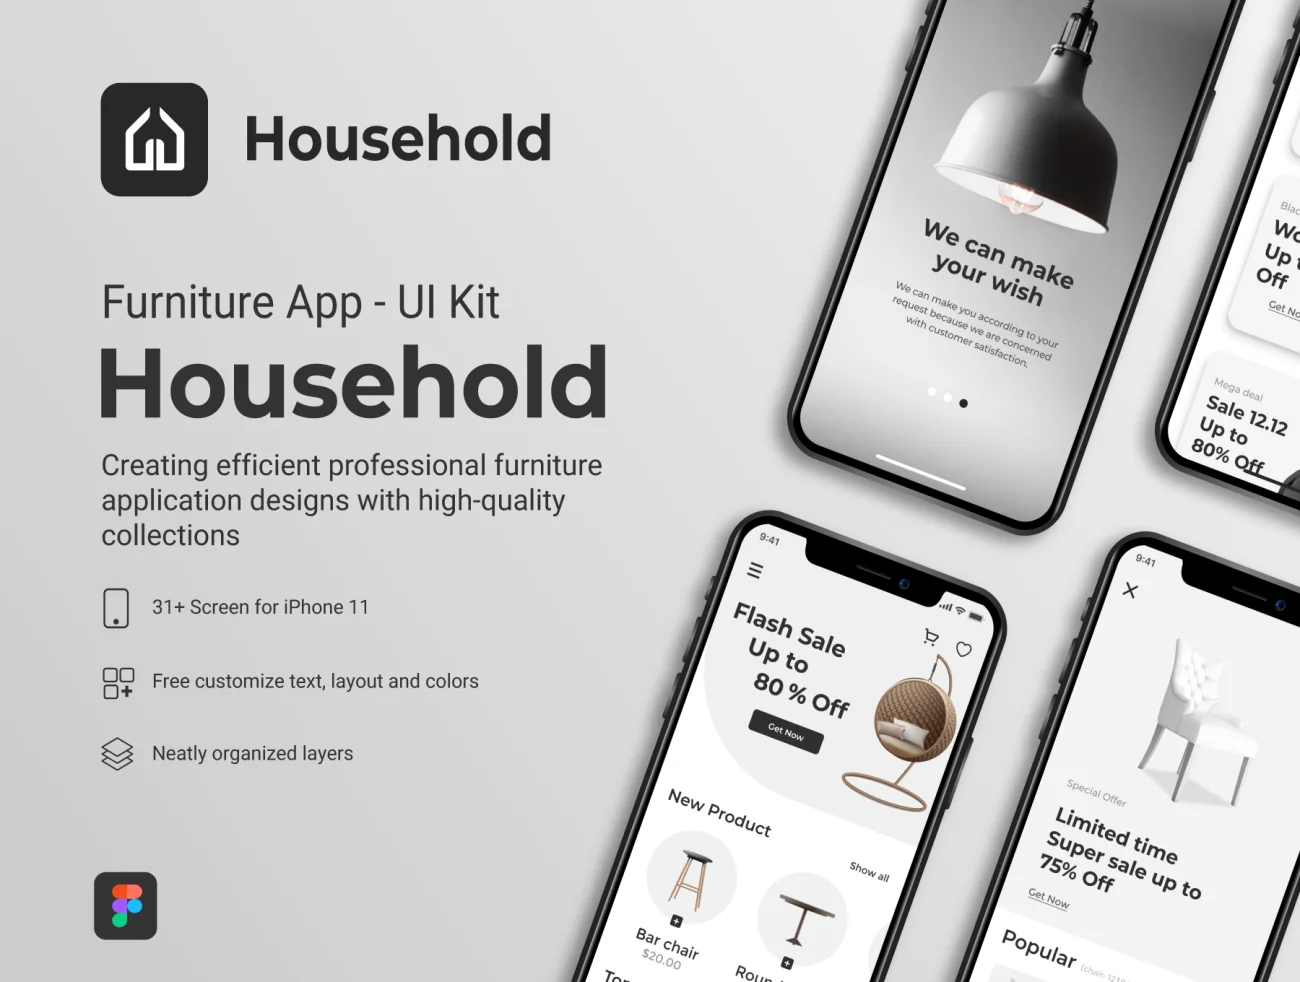 31屏家居家具应用UI设计套件 Household – Furniture Application Mobile UI Kit .figma插图1